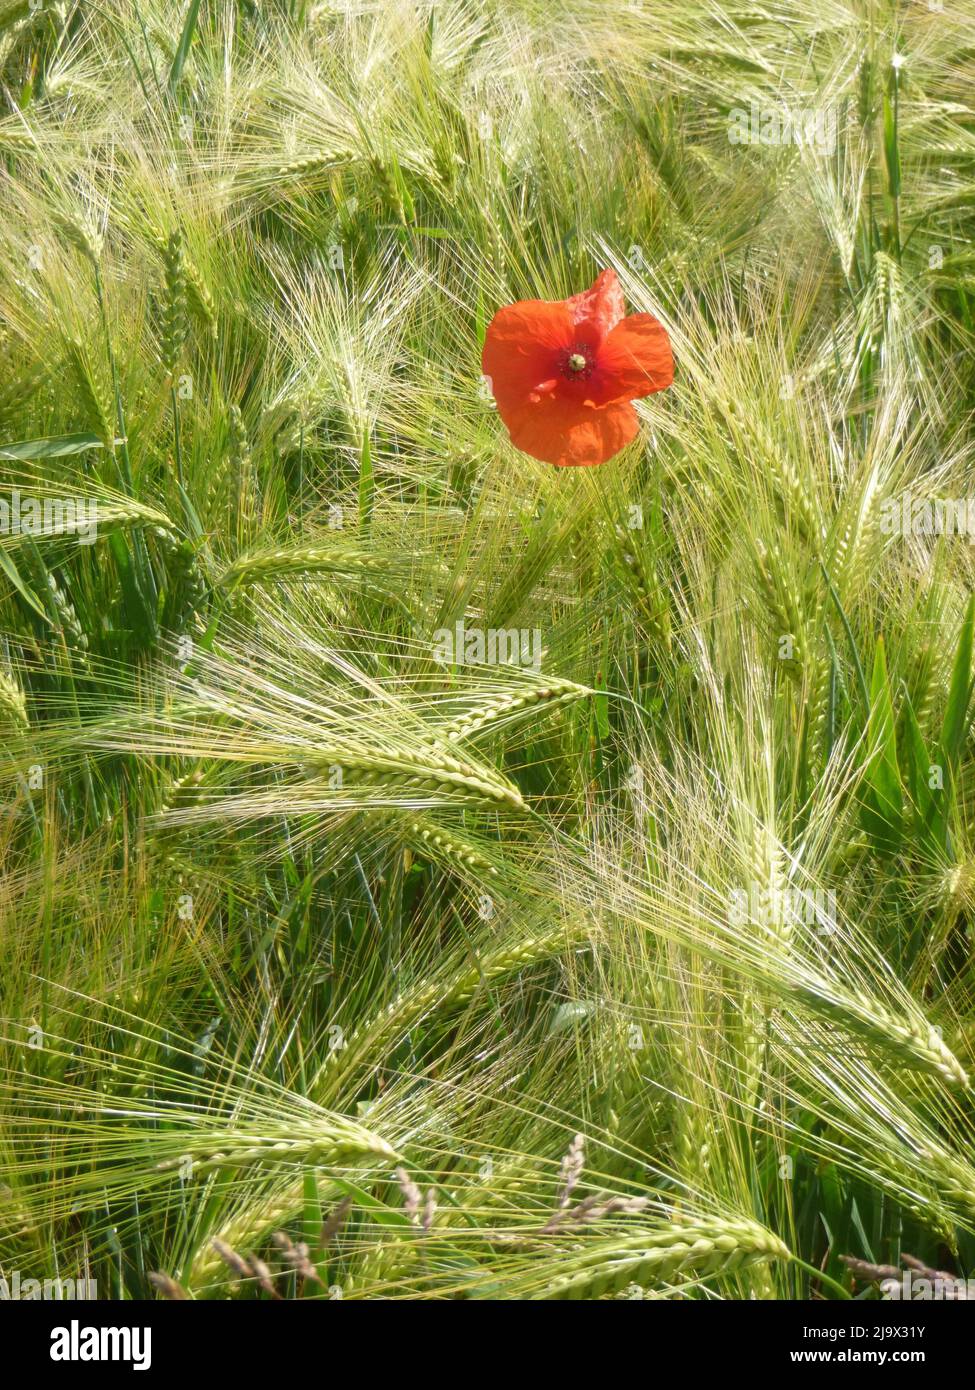 Mohn Flower in a grain field. Stock Photo